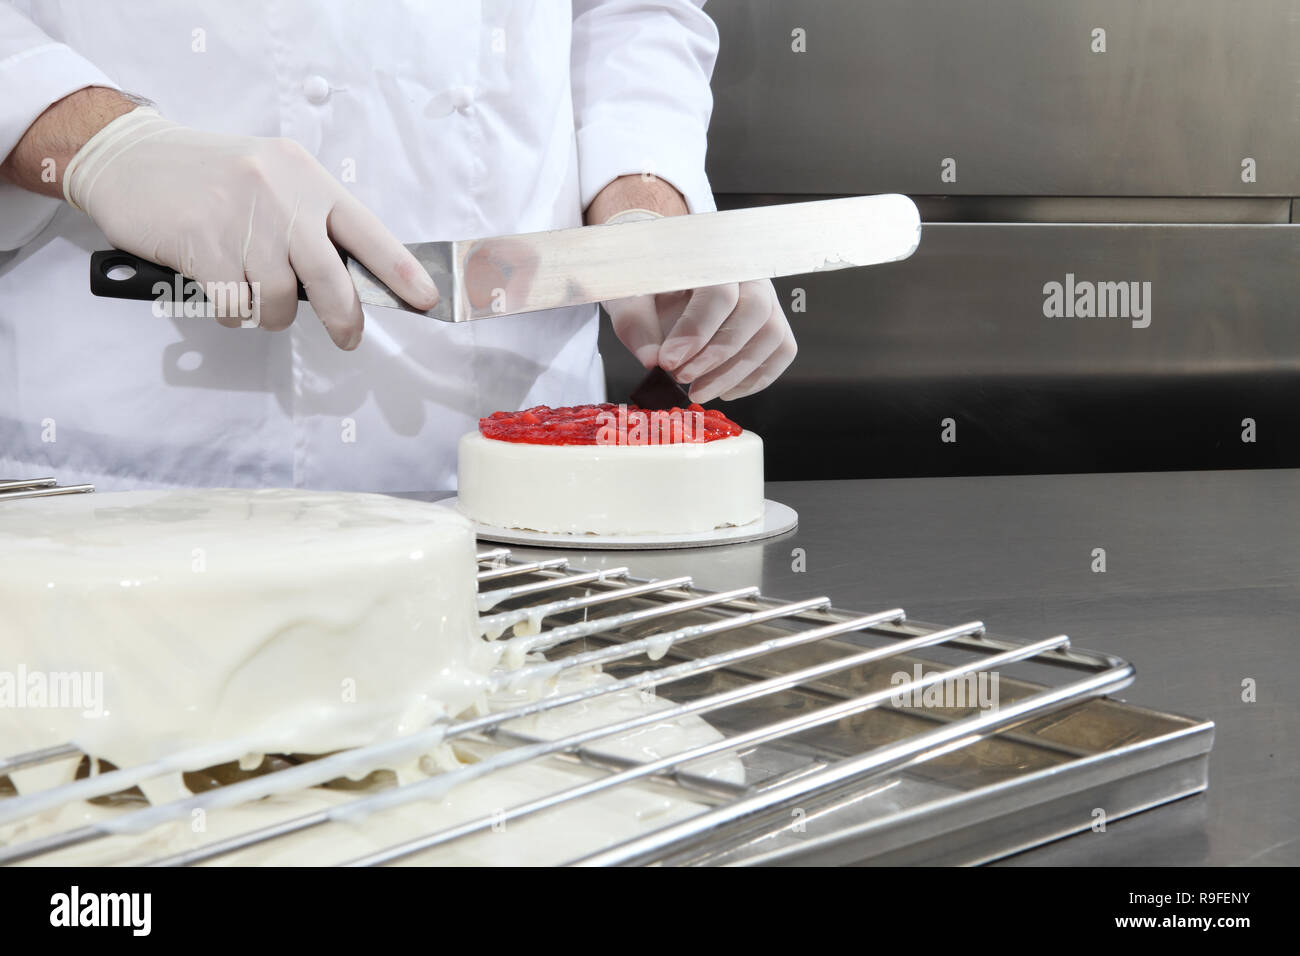 Hände Konditor bereitet einen Kuchen, Deckel mit Puderzucker und mit  Erdbeeren verzieren, arbeitet an einem Edelstahl industrielle Küche  arbeiten Top Stockfotografie - Alamy